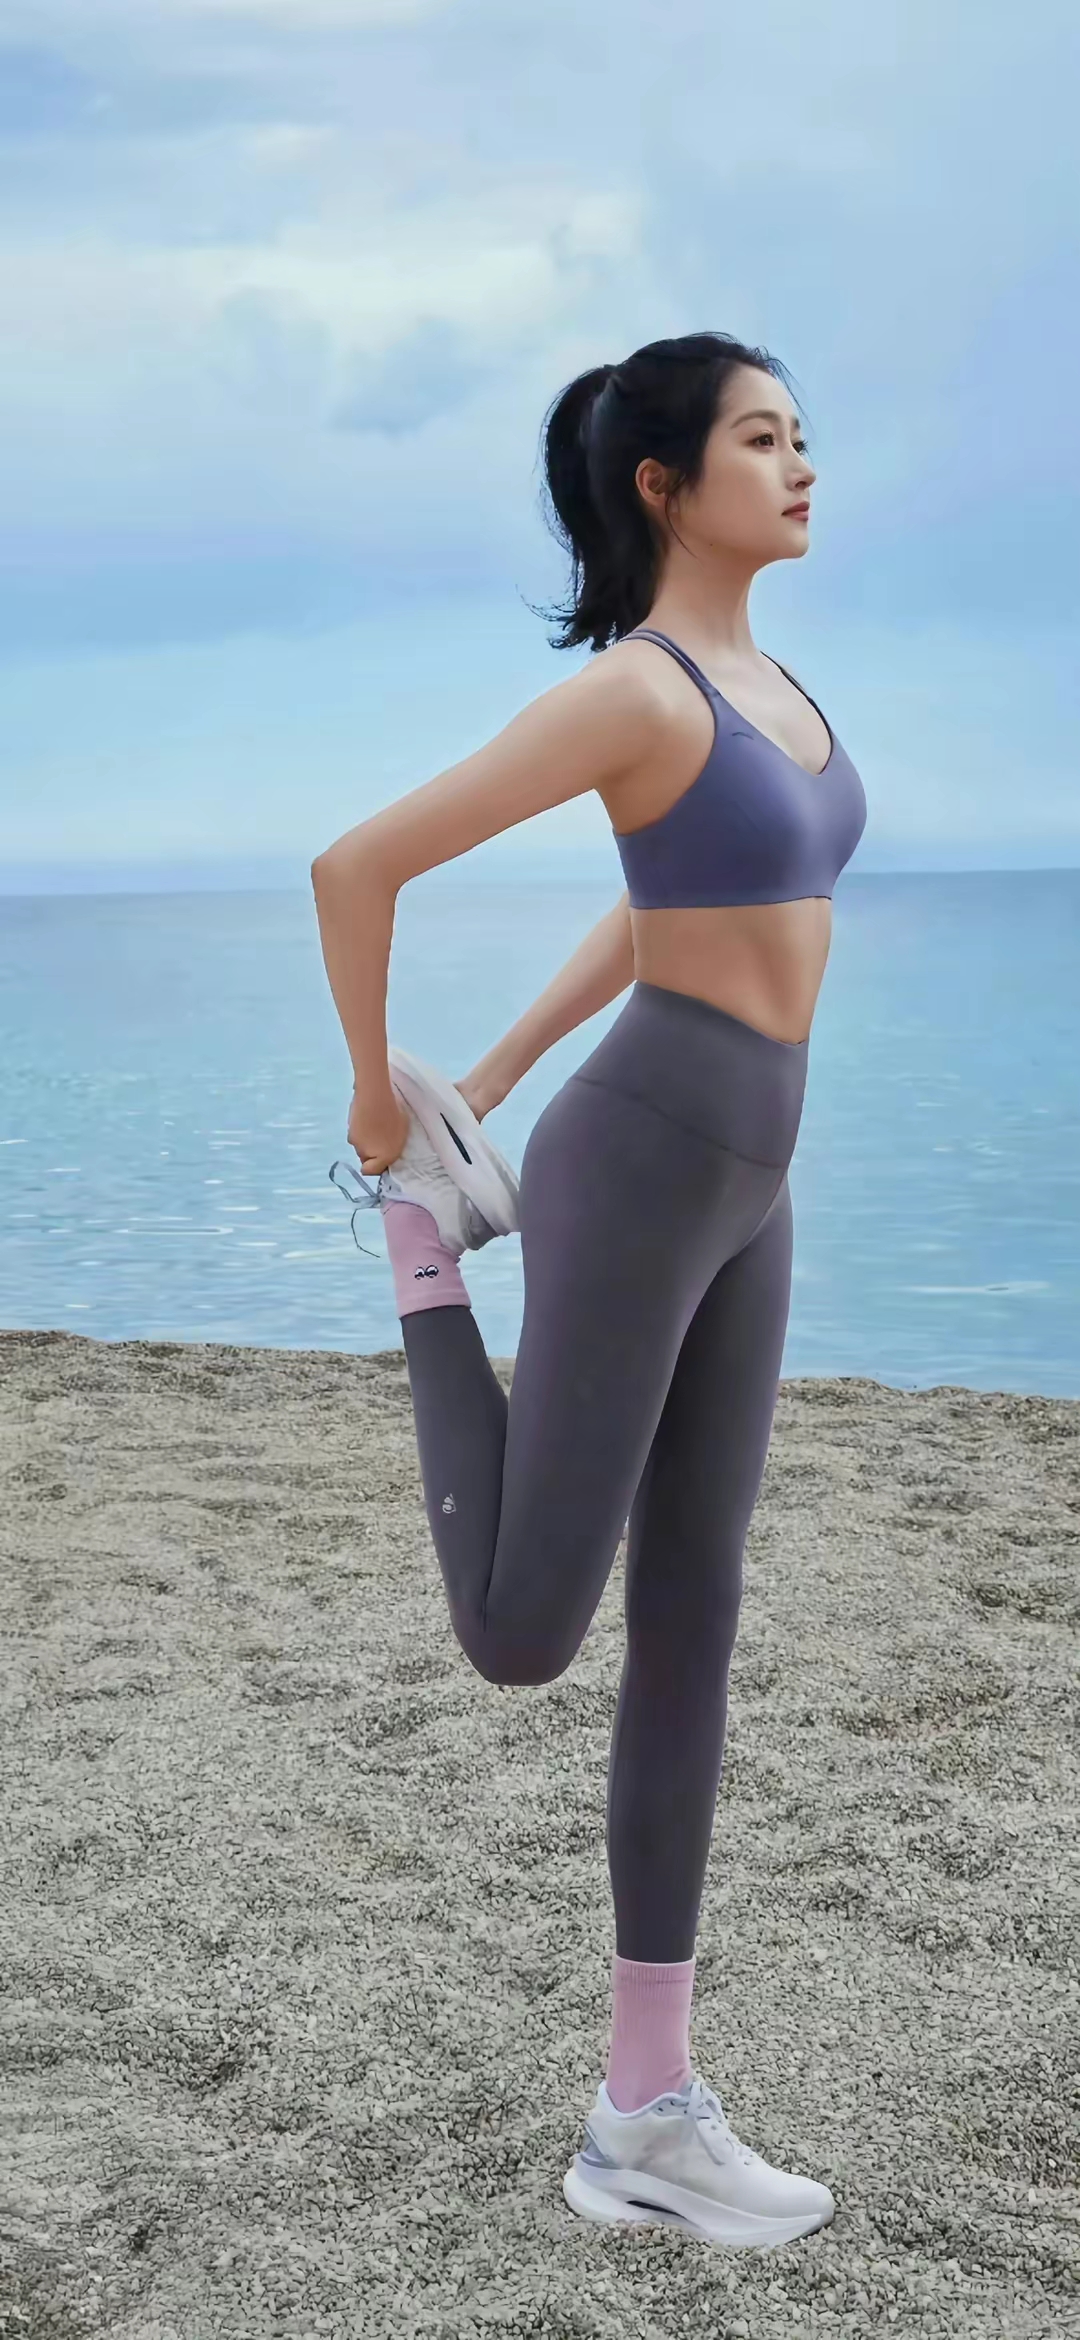 在海滩上,关晓彤穿着某品牌瑜伽服,运动鞋,自由自在地奔跑